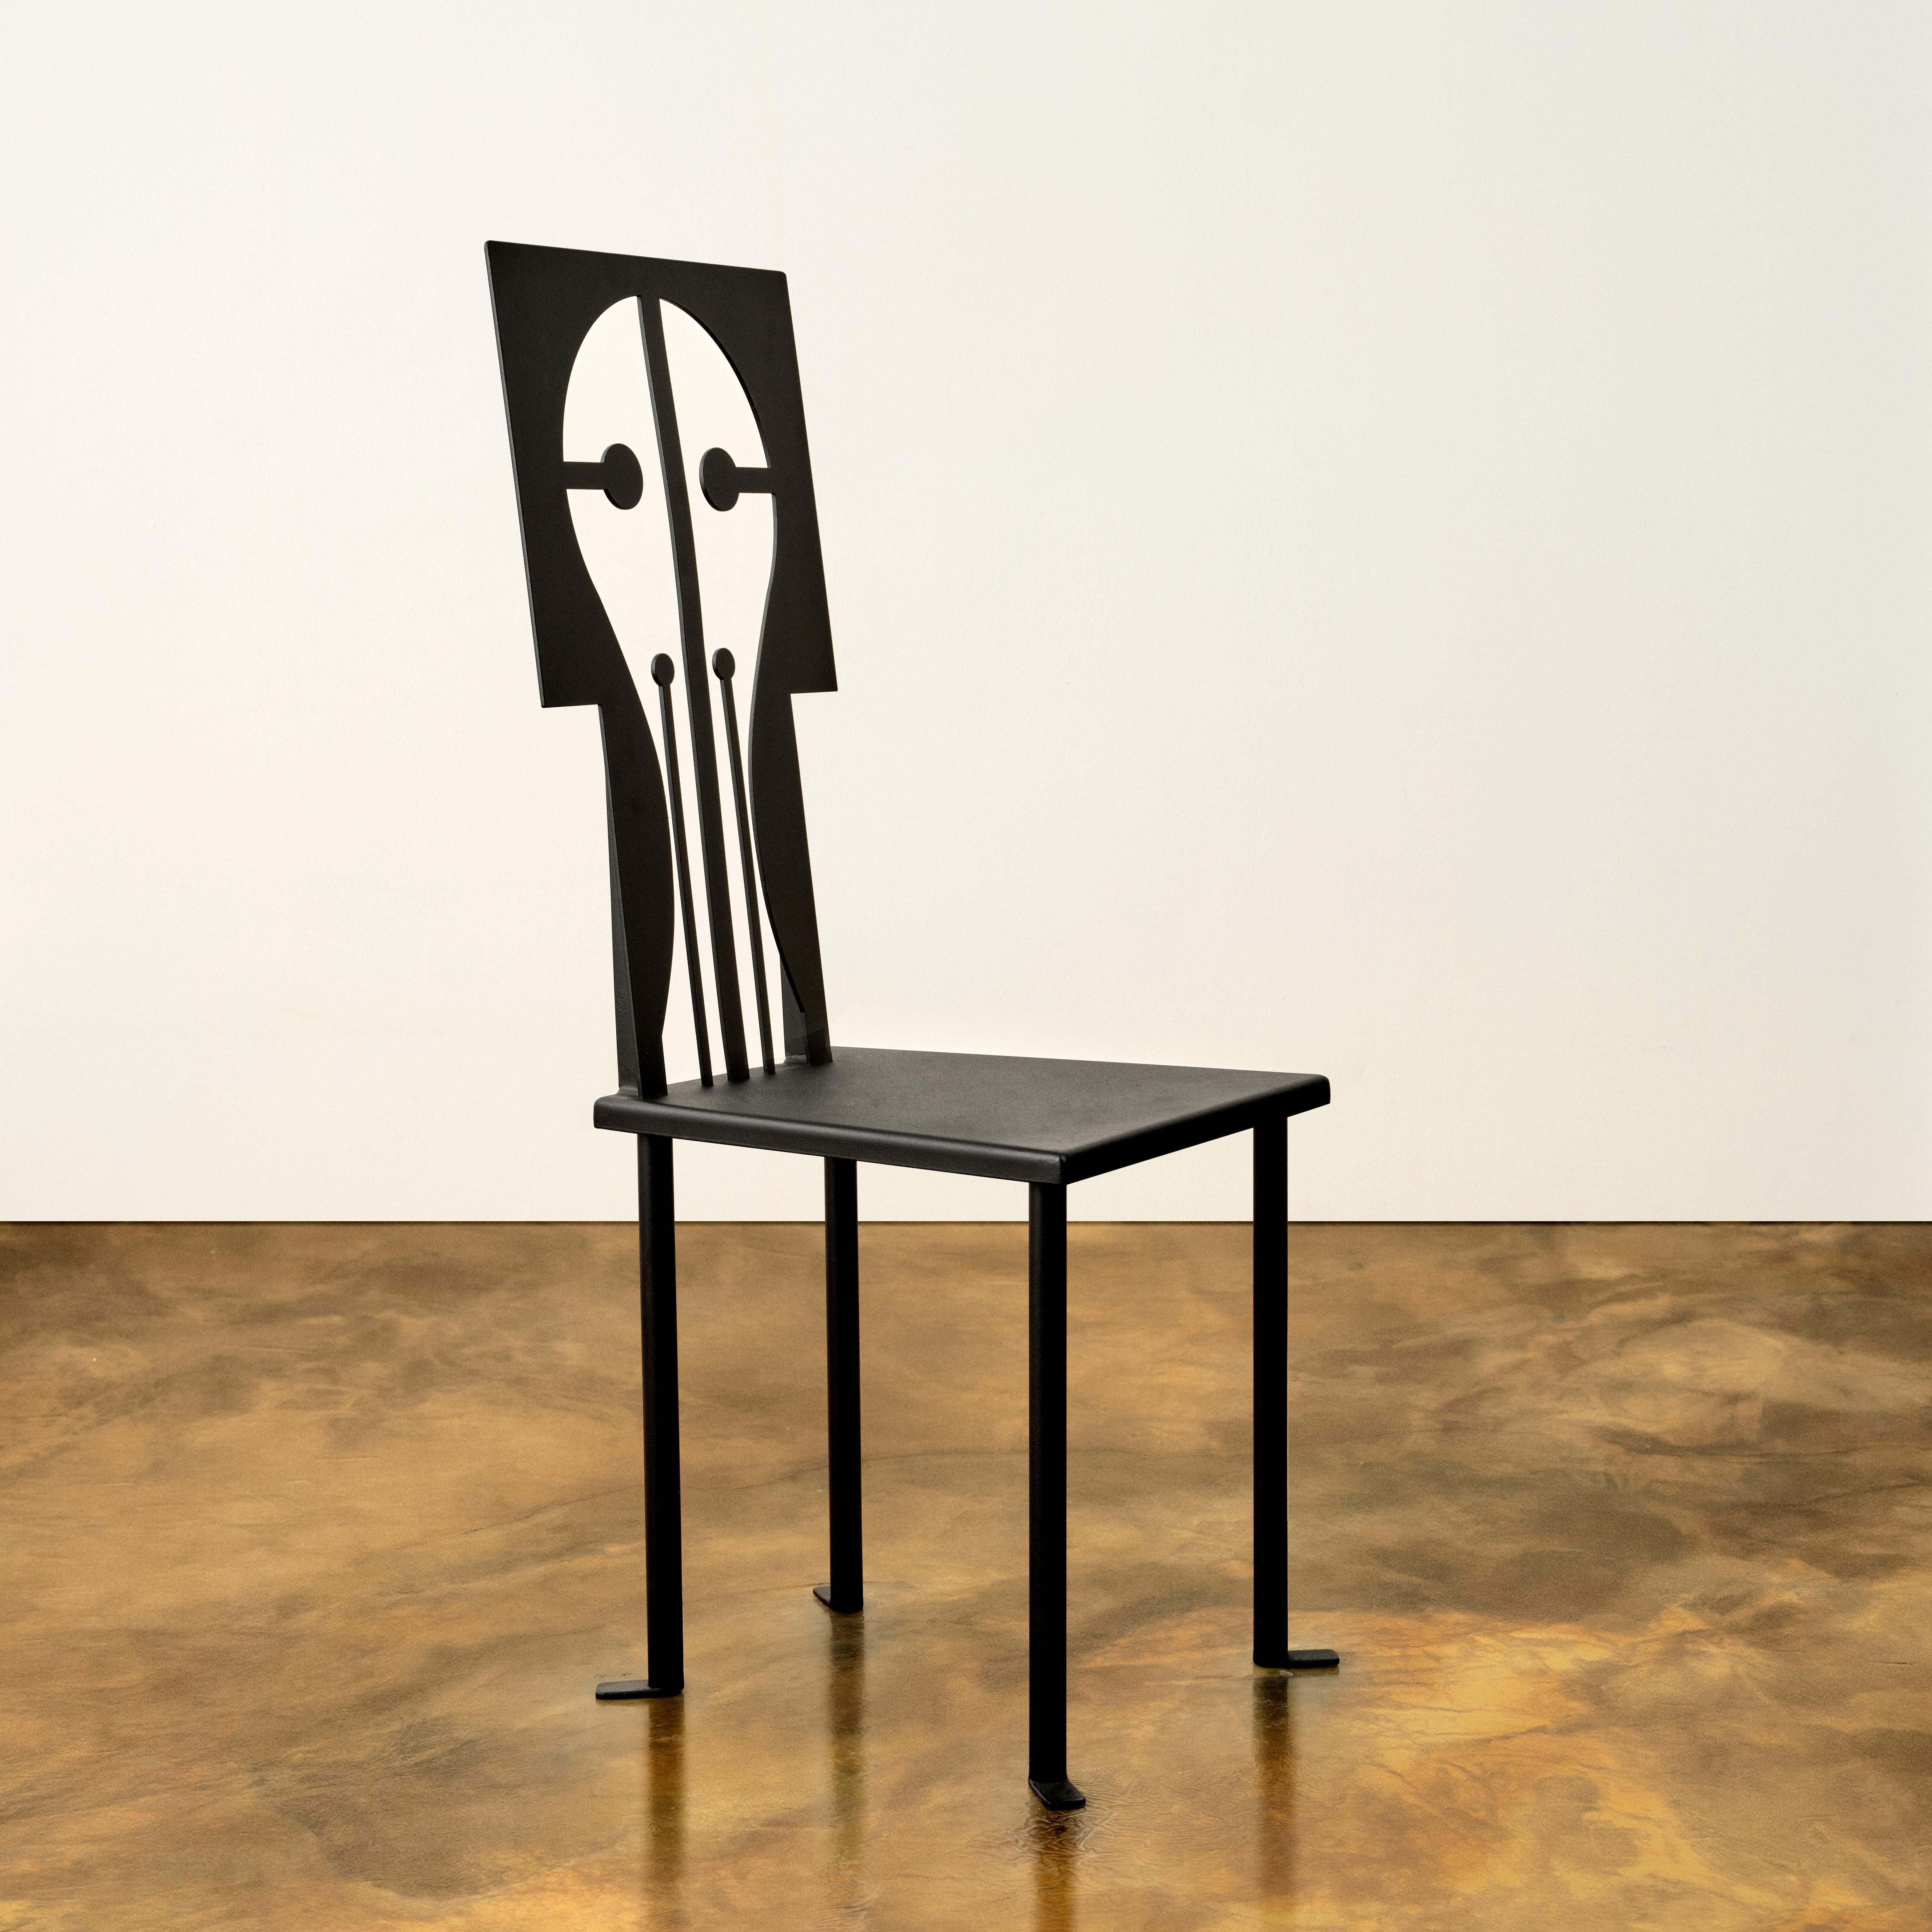 La chaise ''Epona'' fait partie de la collection Rèveuse d'Animate Objects. Inspirée par le costume de cheval de Picasso dans le ballet 